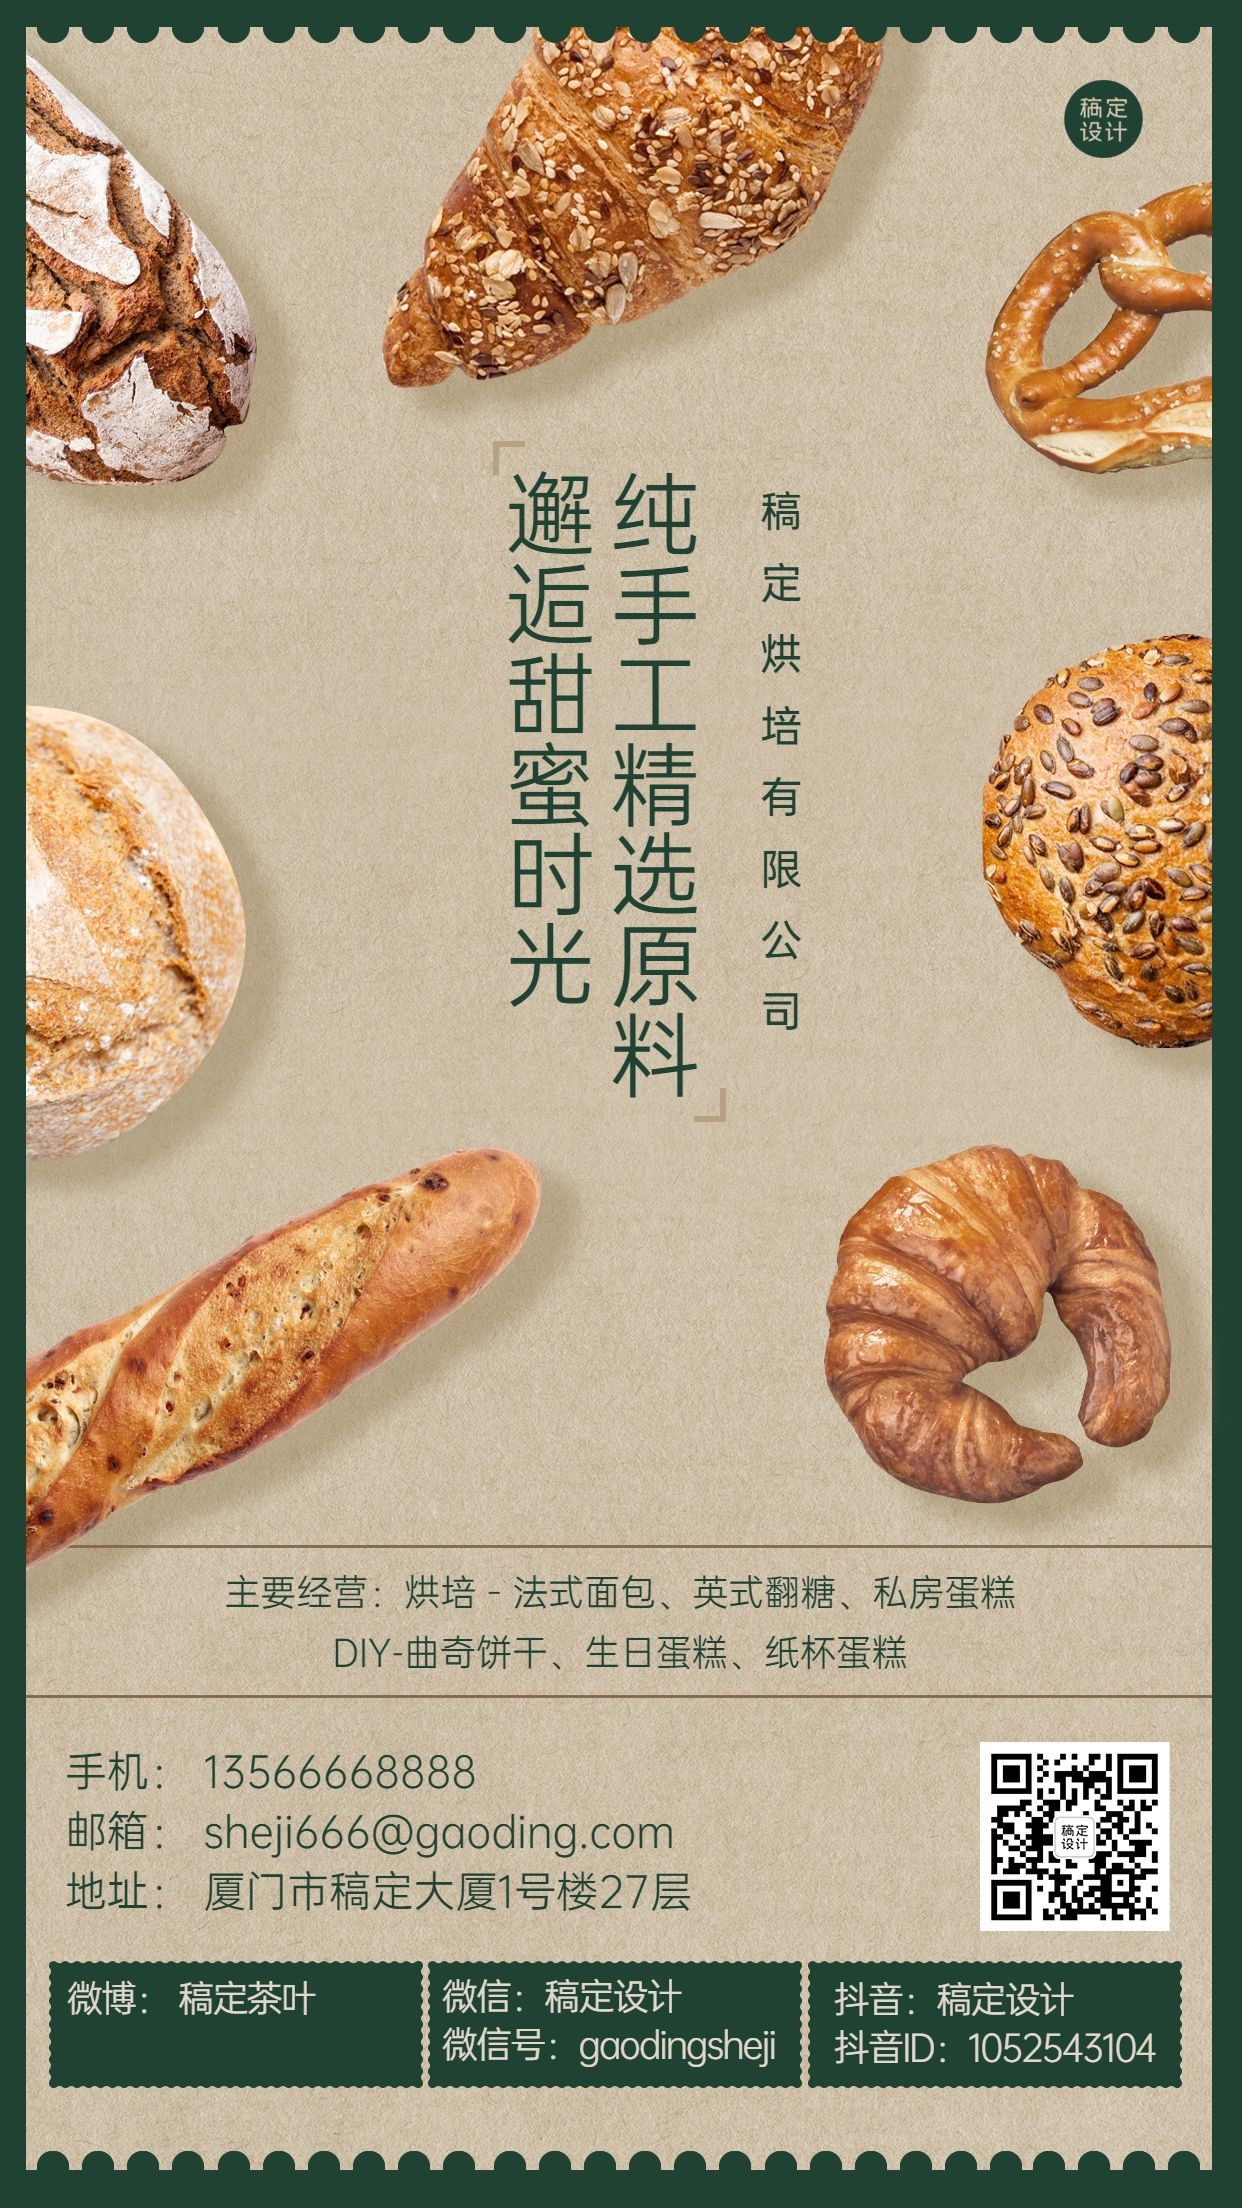 企业宣传烘焙公司面包工坊电子名片海报预览效果